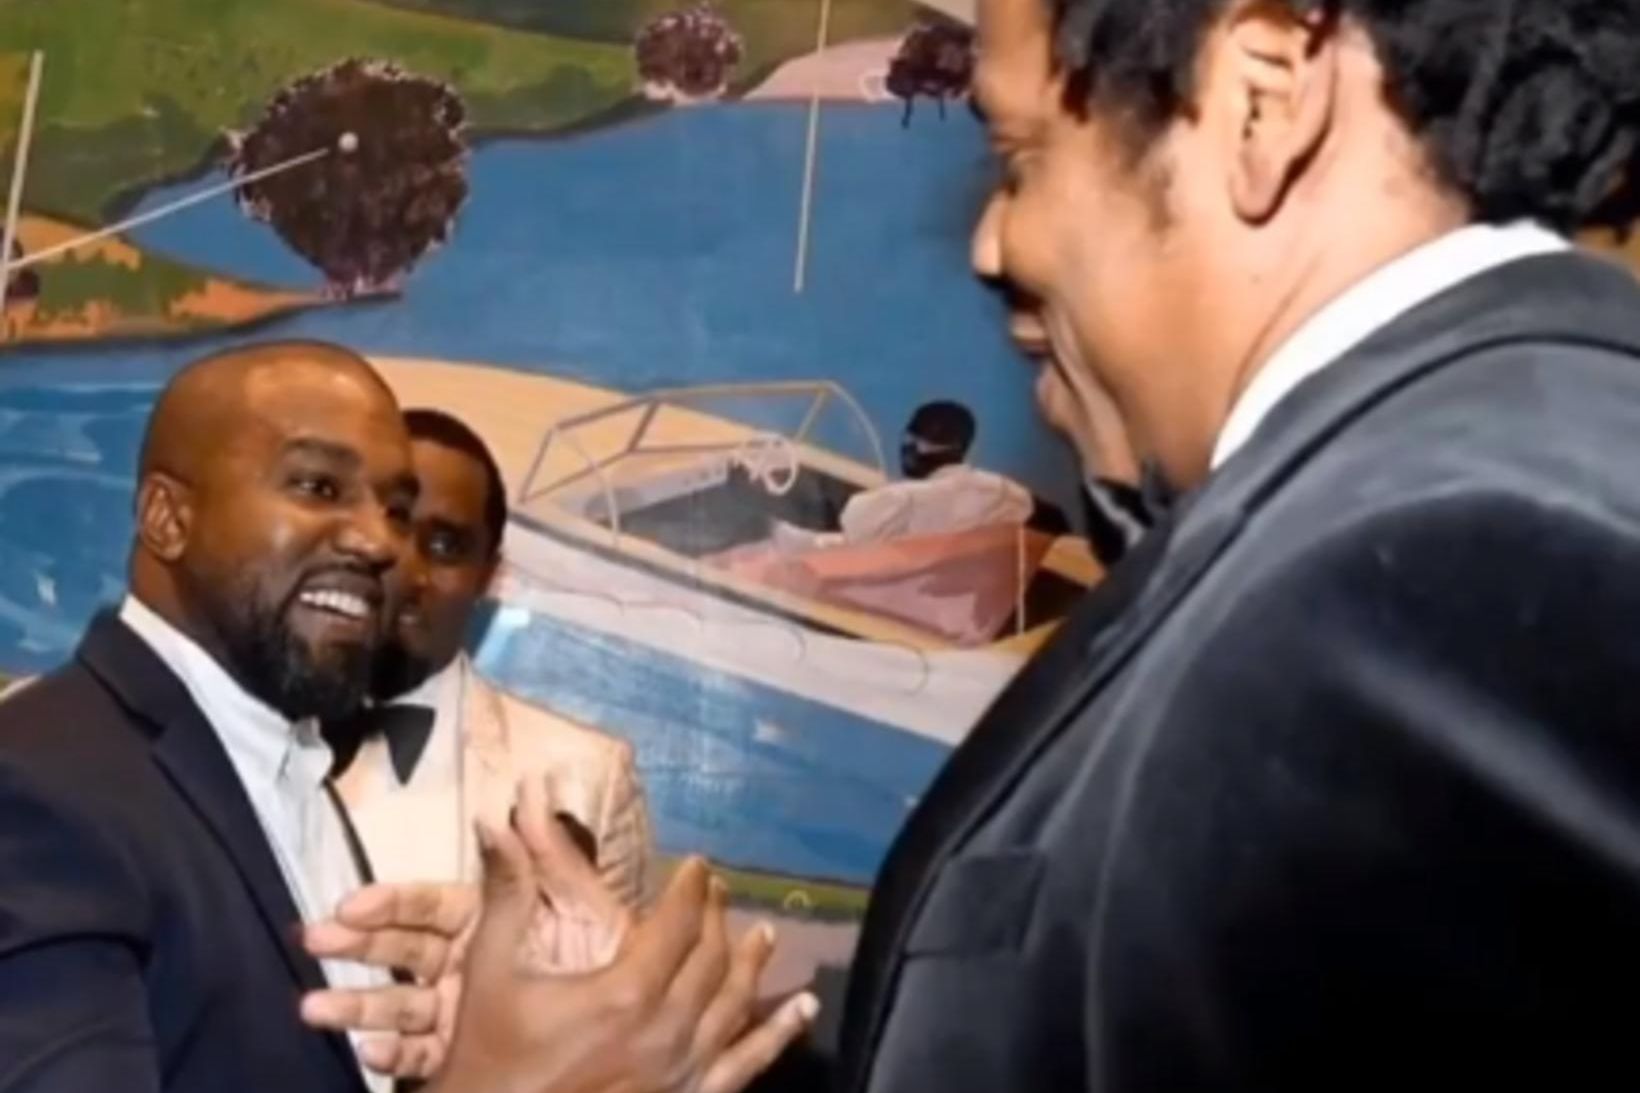 Kanye West og Jay-Z virtust kátir að sjá hvor annan.